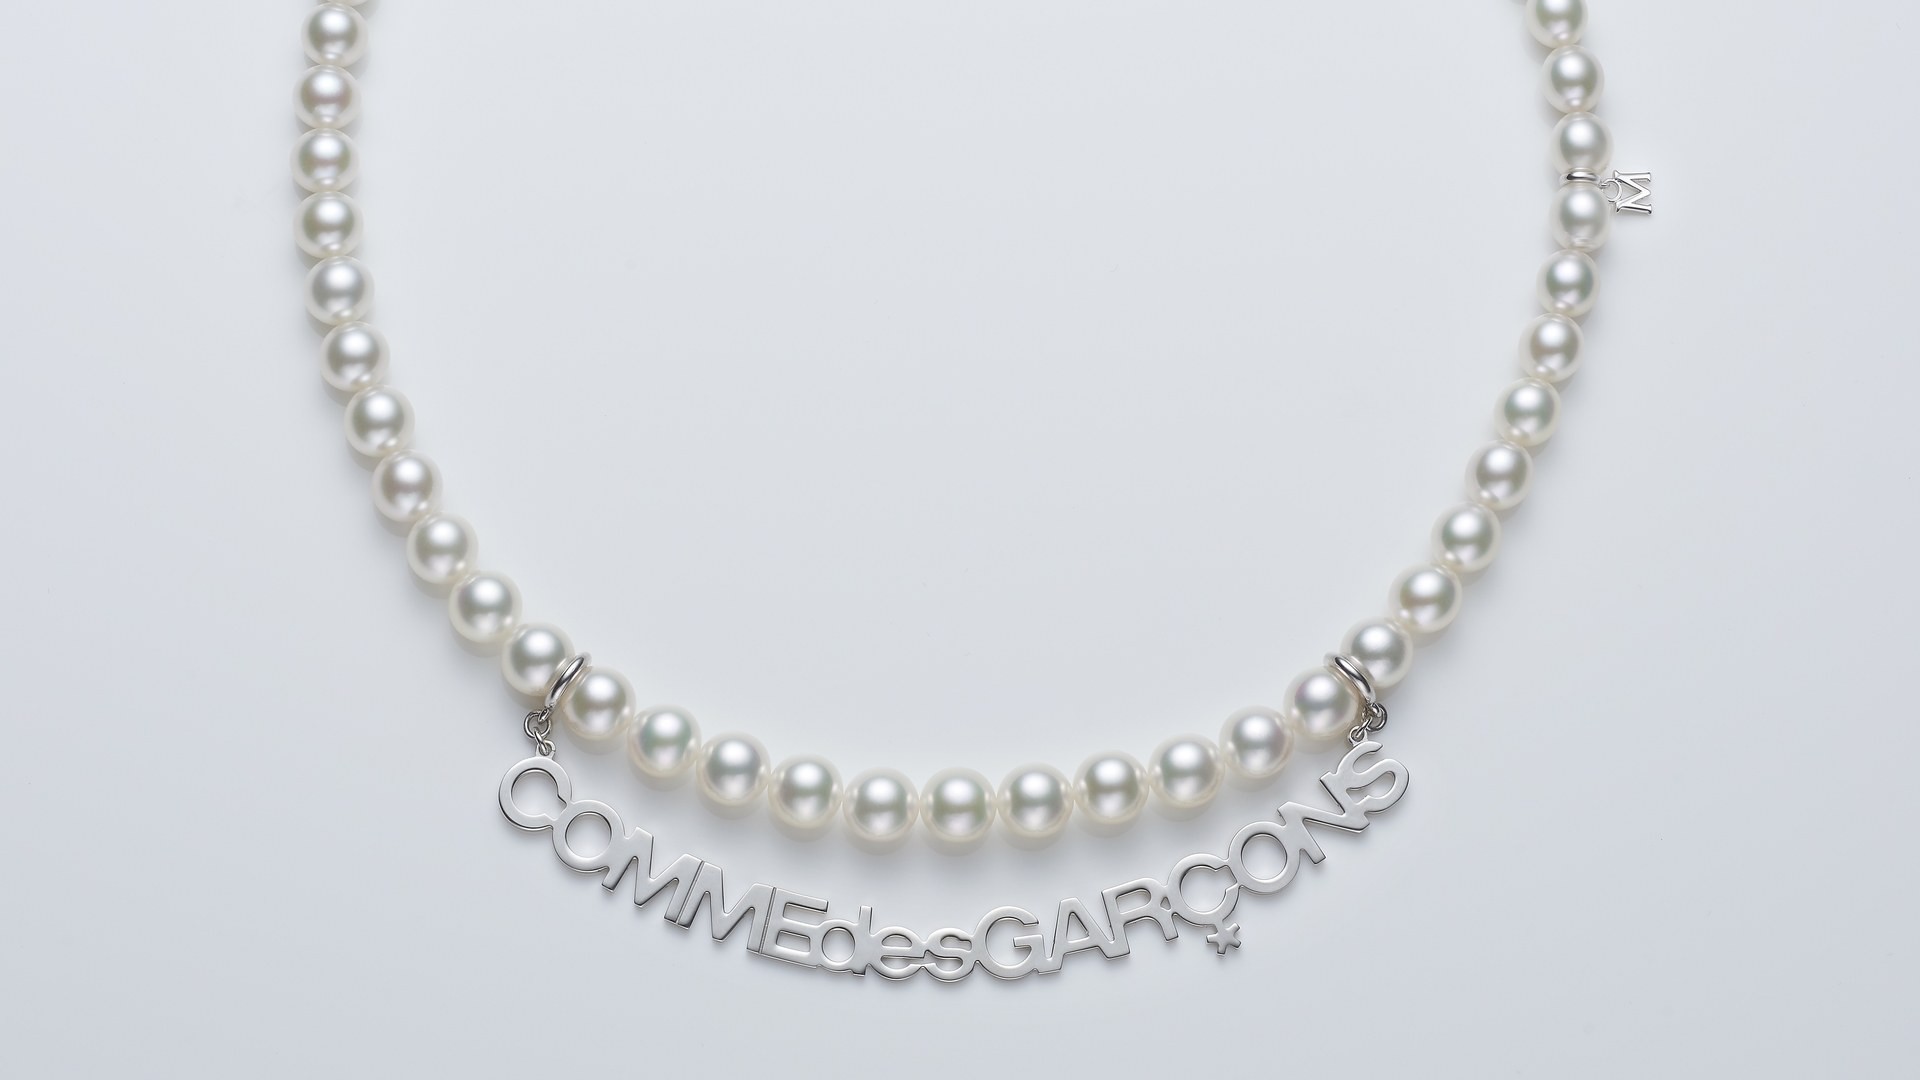 Рей Кавакубо создала украшения из жемчуга для Mikimoto Pearls